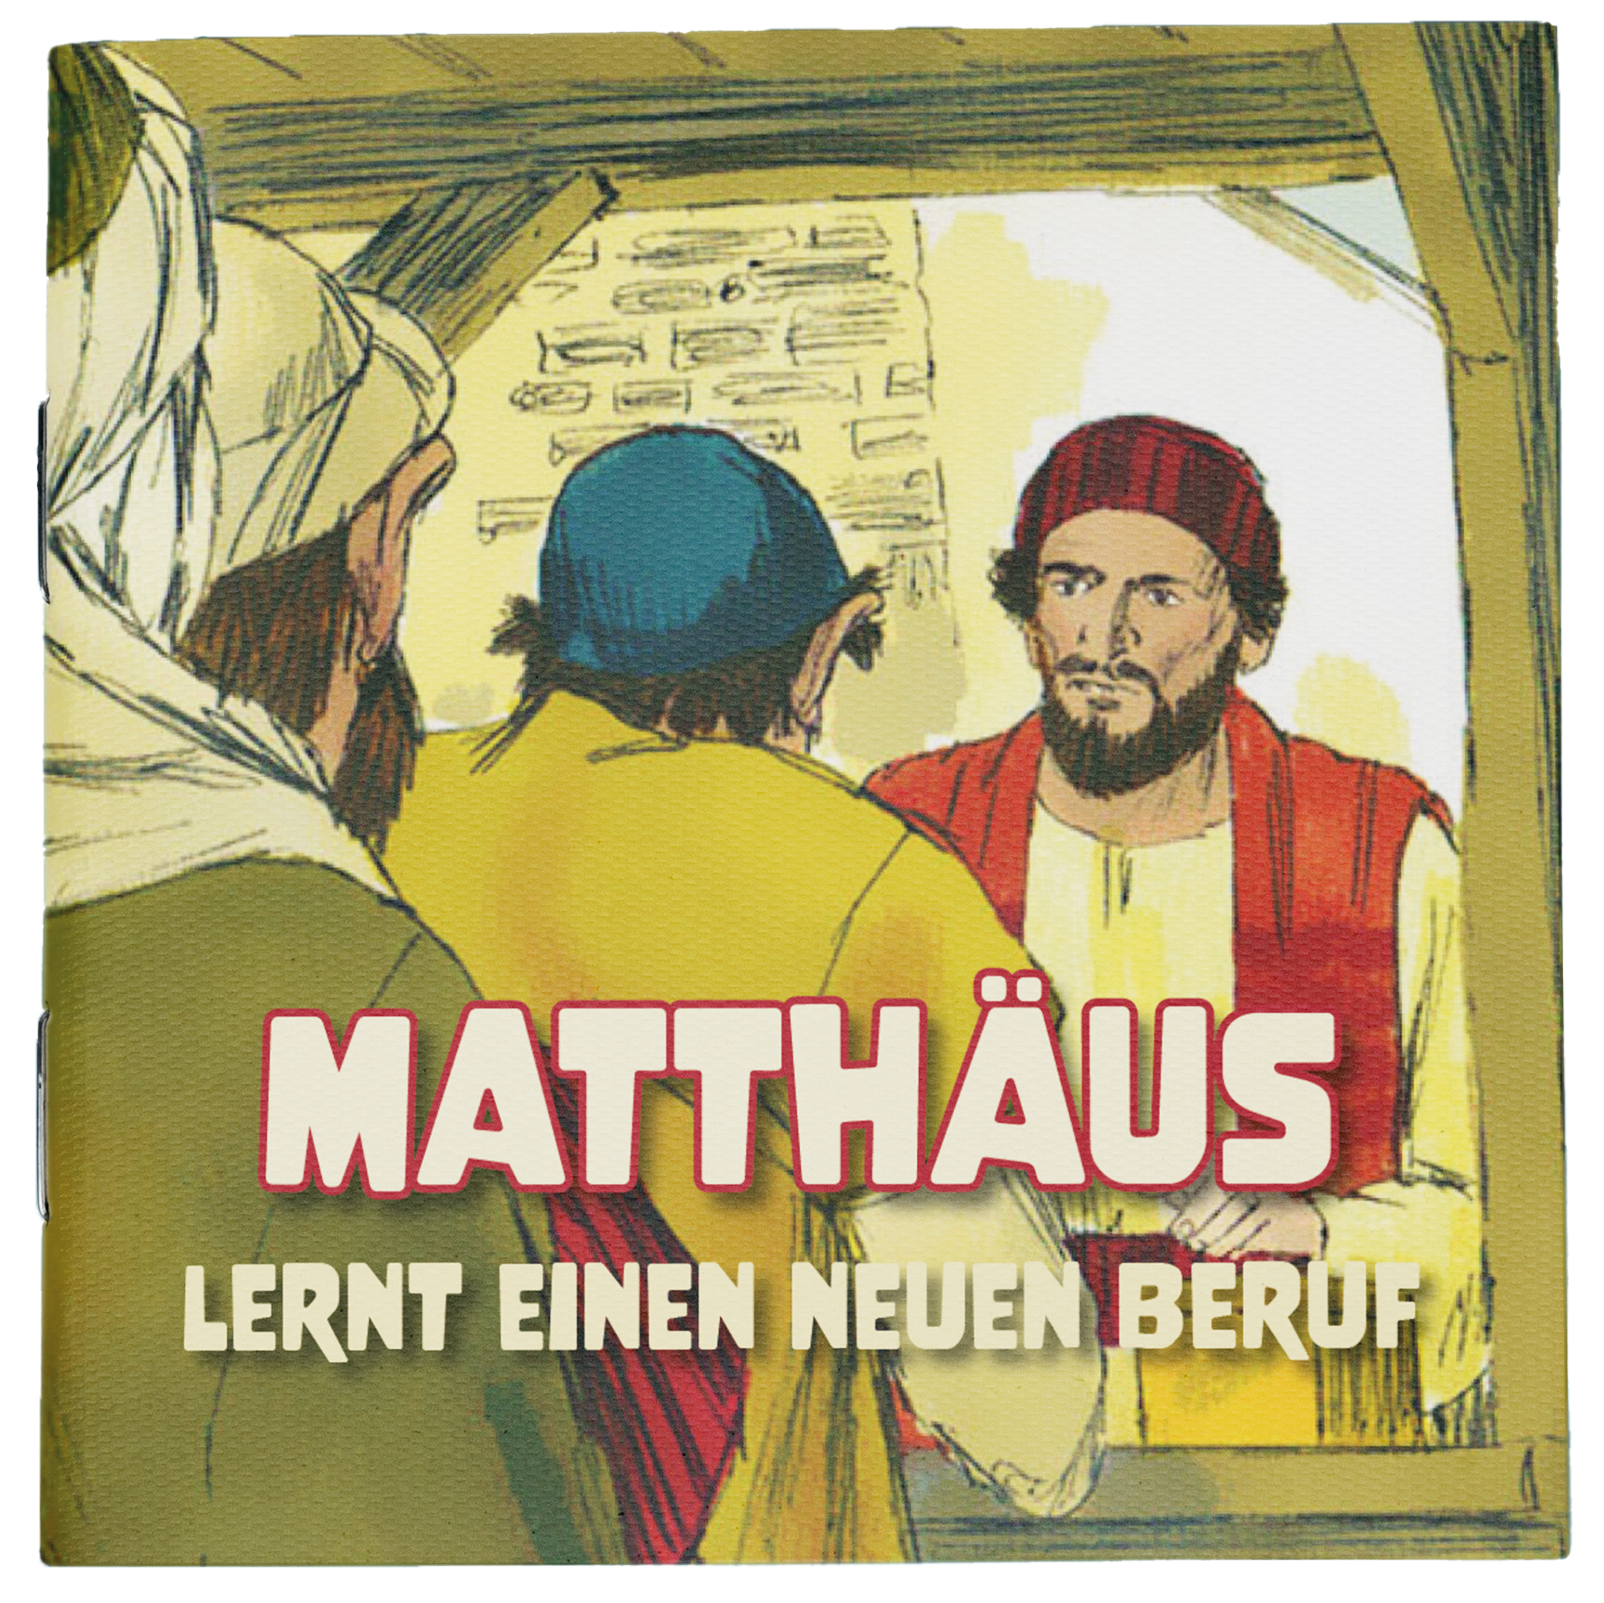 Matthäus lernt einen neuen Beruf 